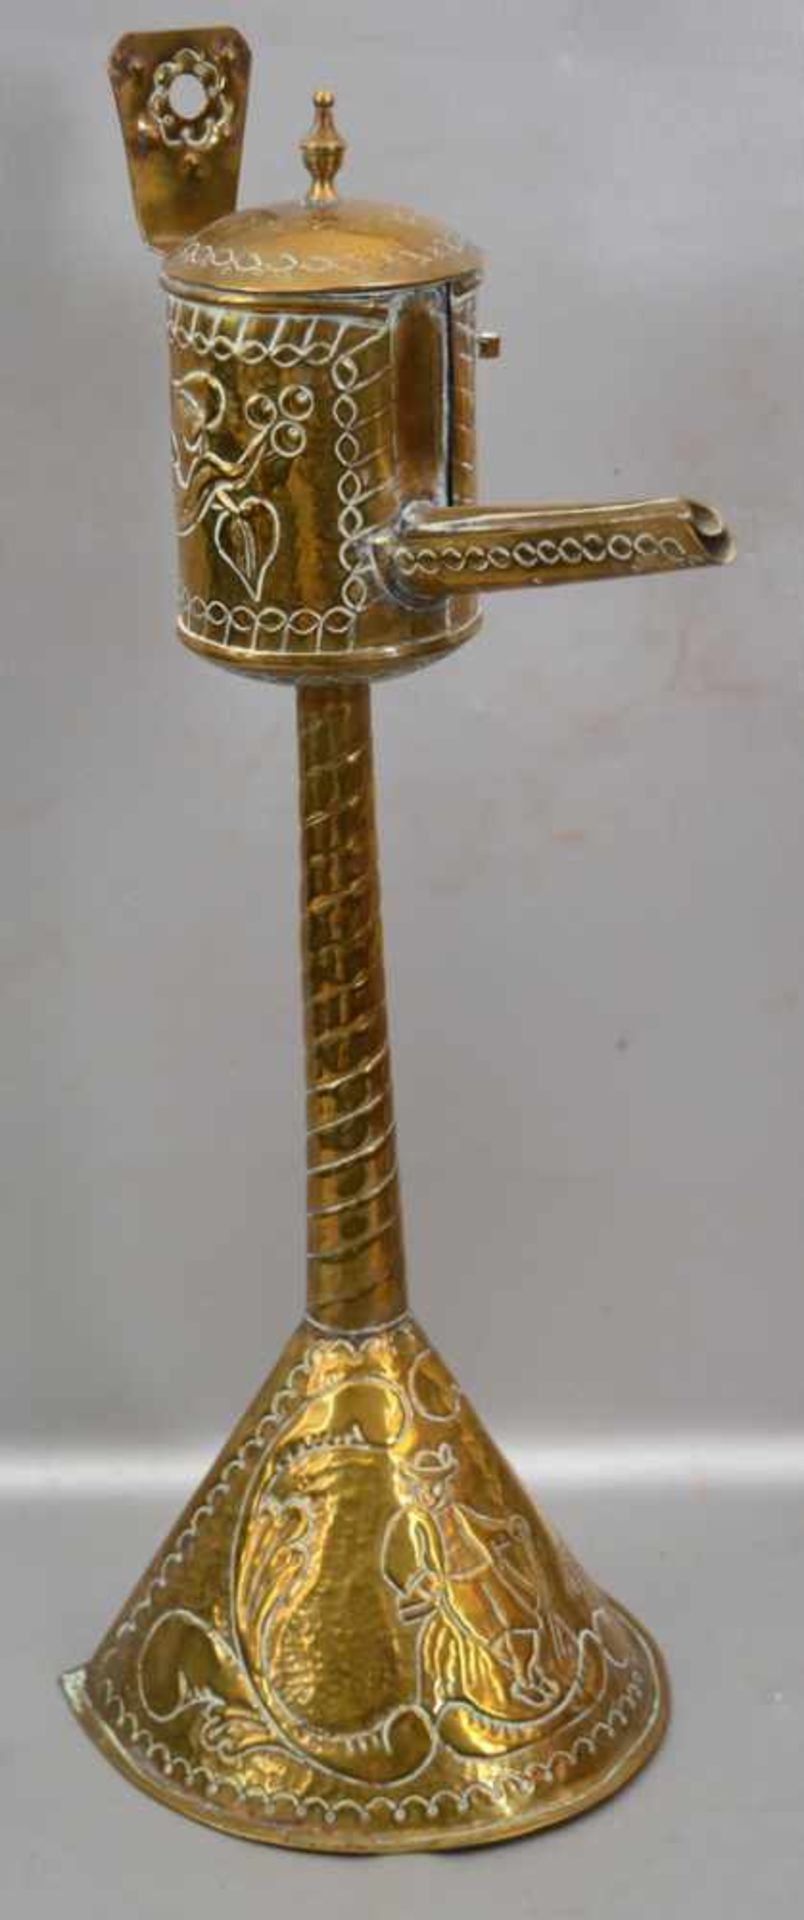 Öllampe Messing, auf halbrundem Fuß stehend, aufwendig mit bäuerlichen Ornamenten und Ranken